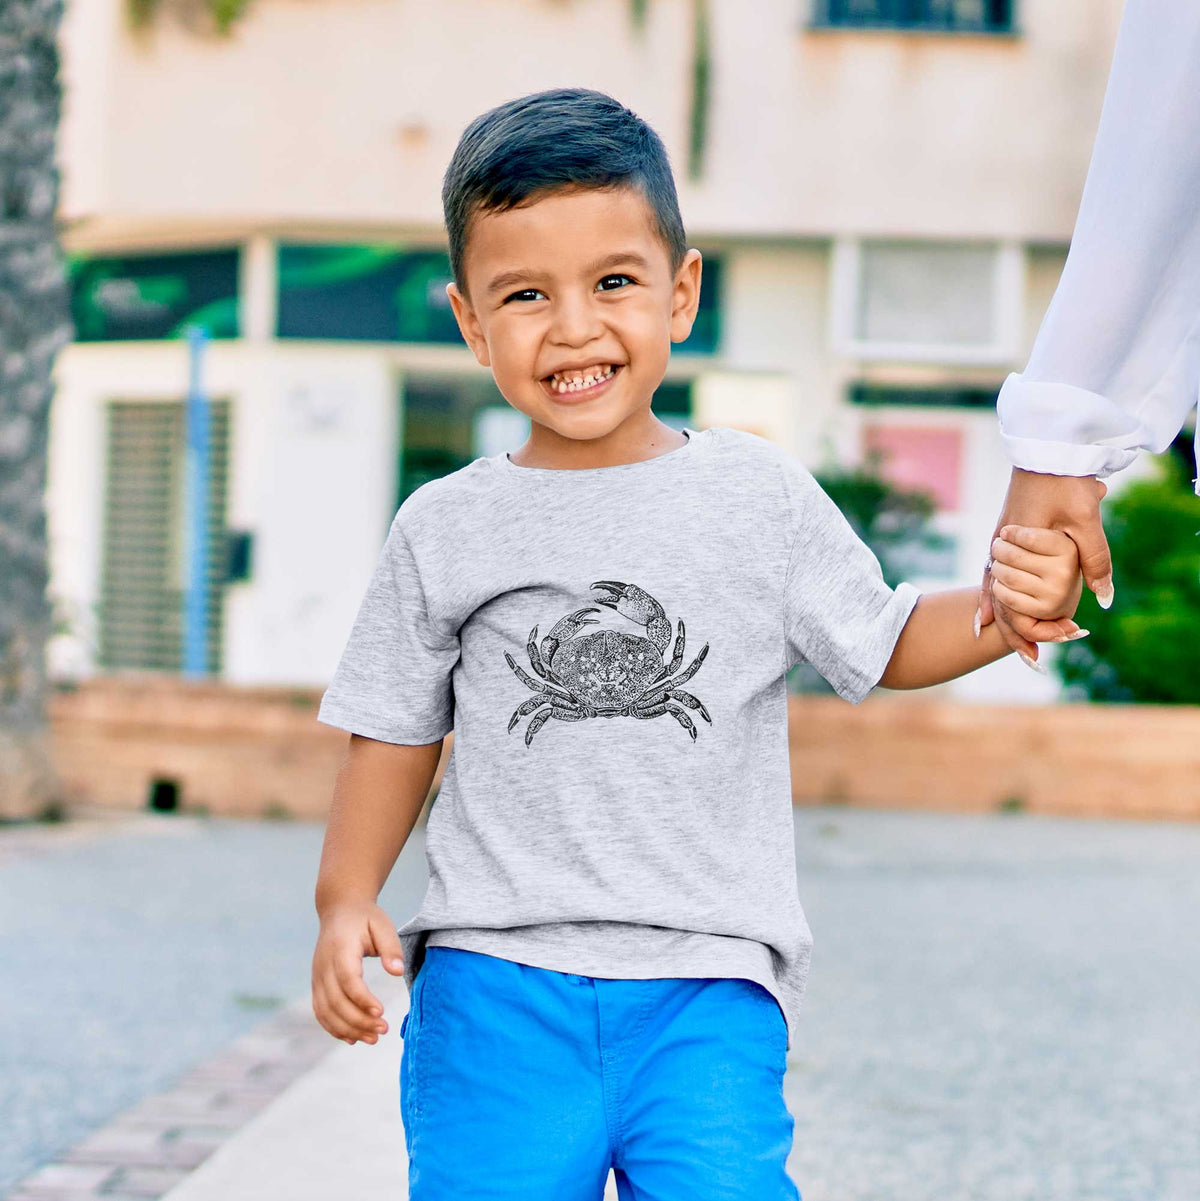 Dungeness Crab - Kids Shirt